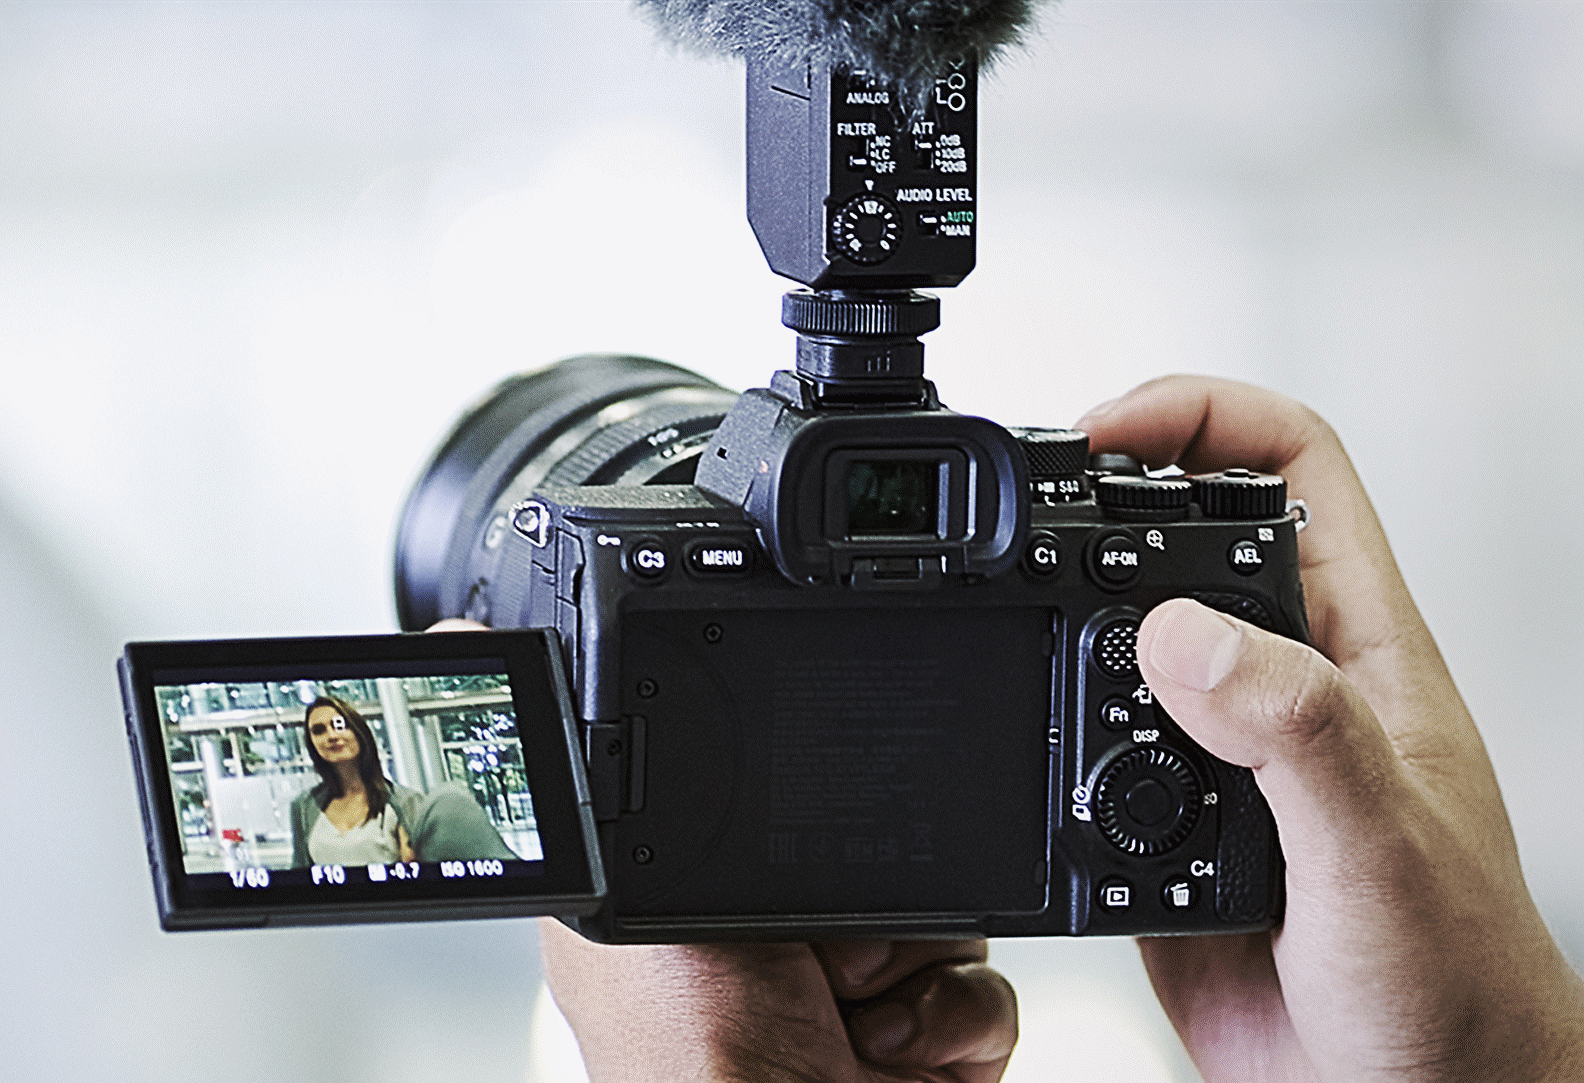 Fotografija autora videa koji snima koristeći stabilizaciju slike u aktivnom režimu aparata bez druge opreme osim fotoaparata